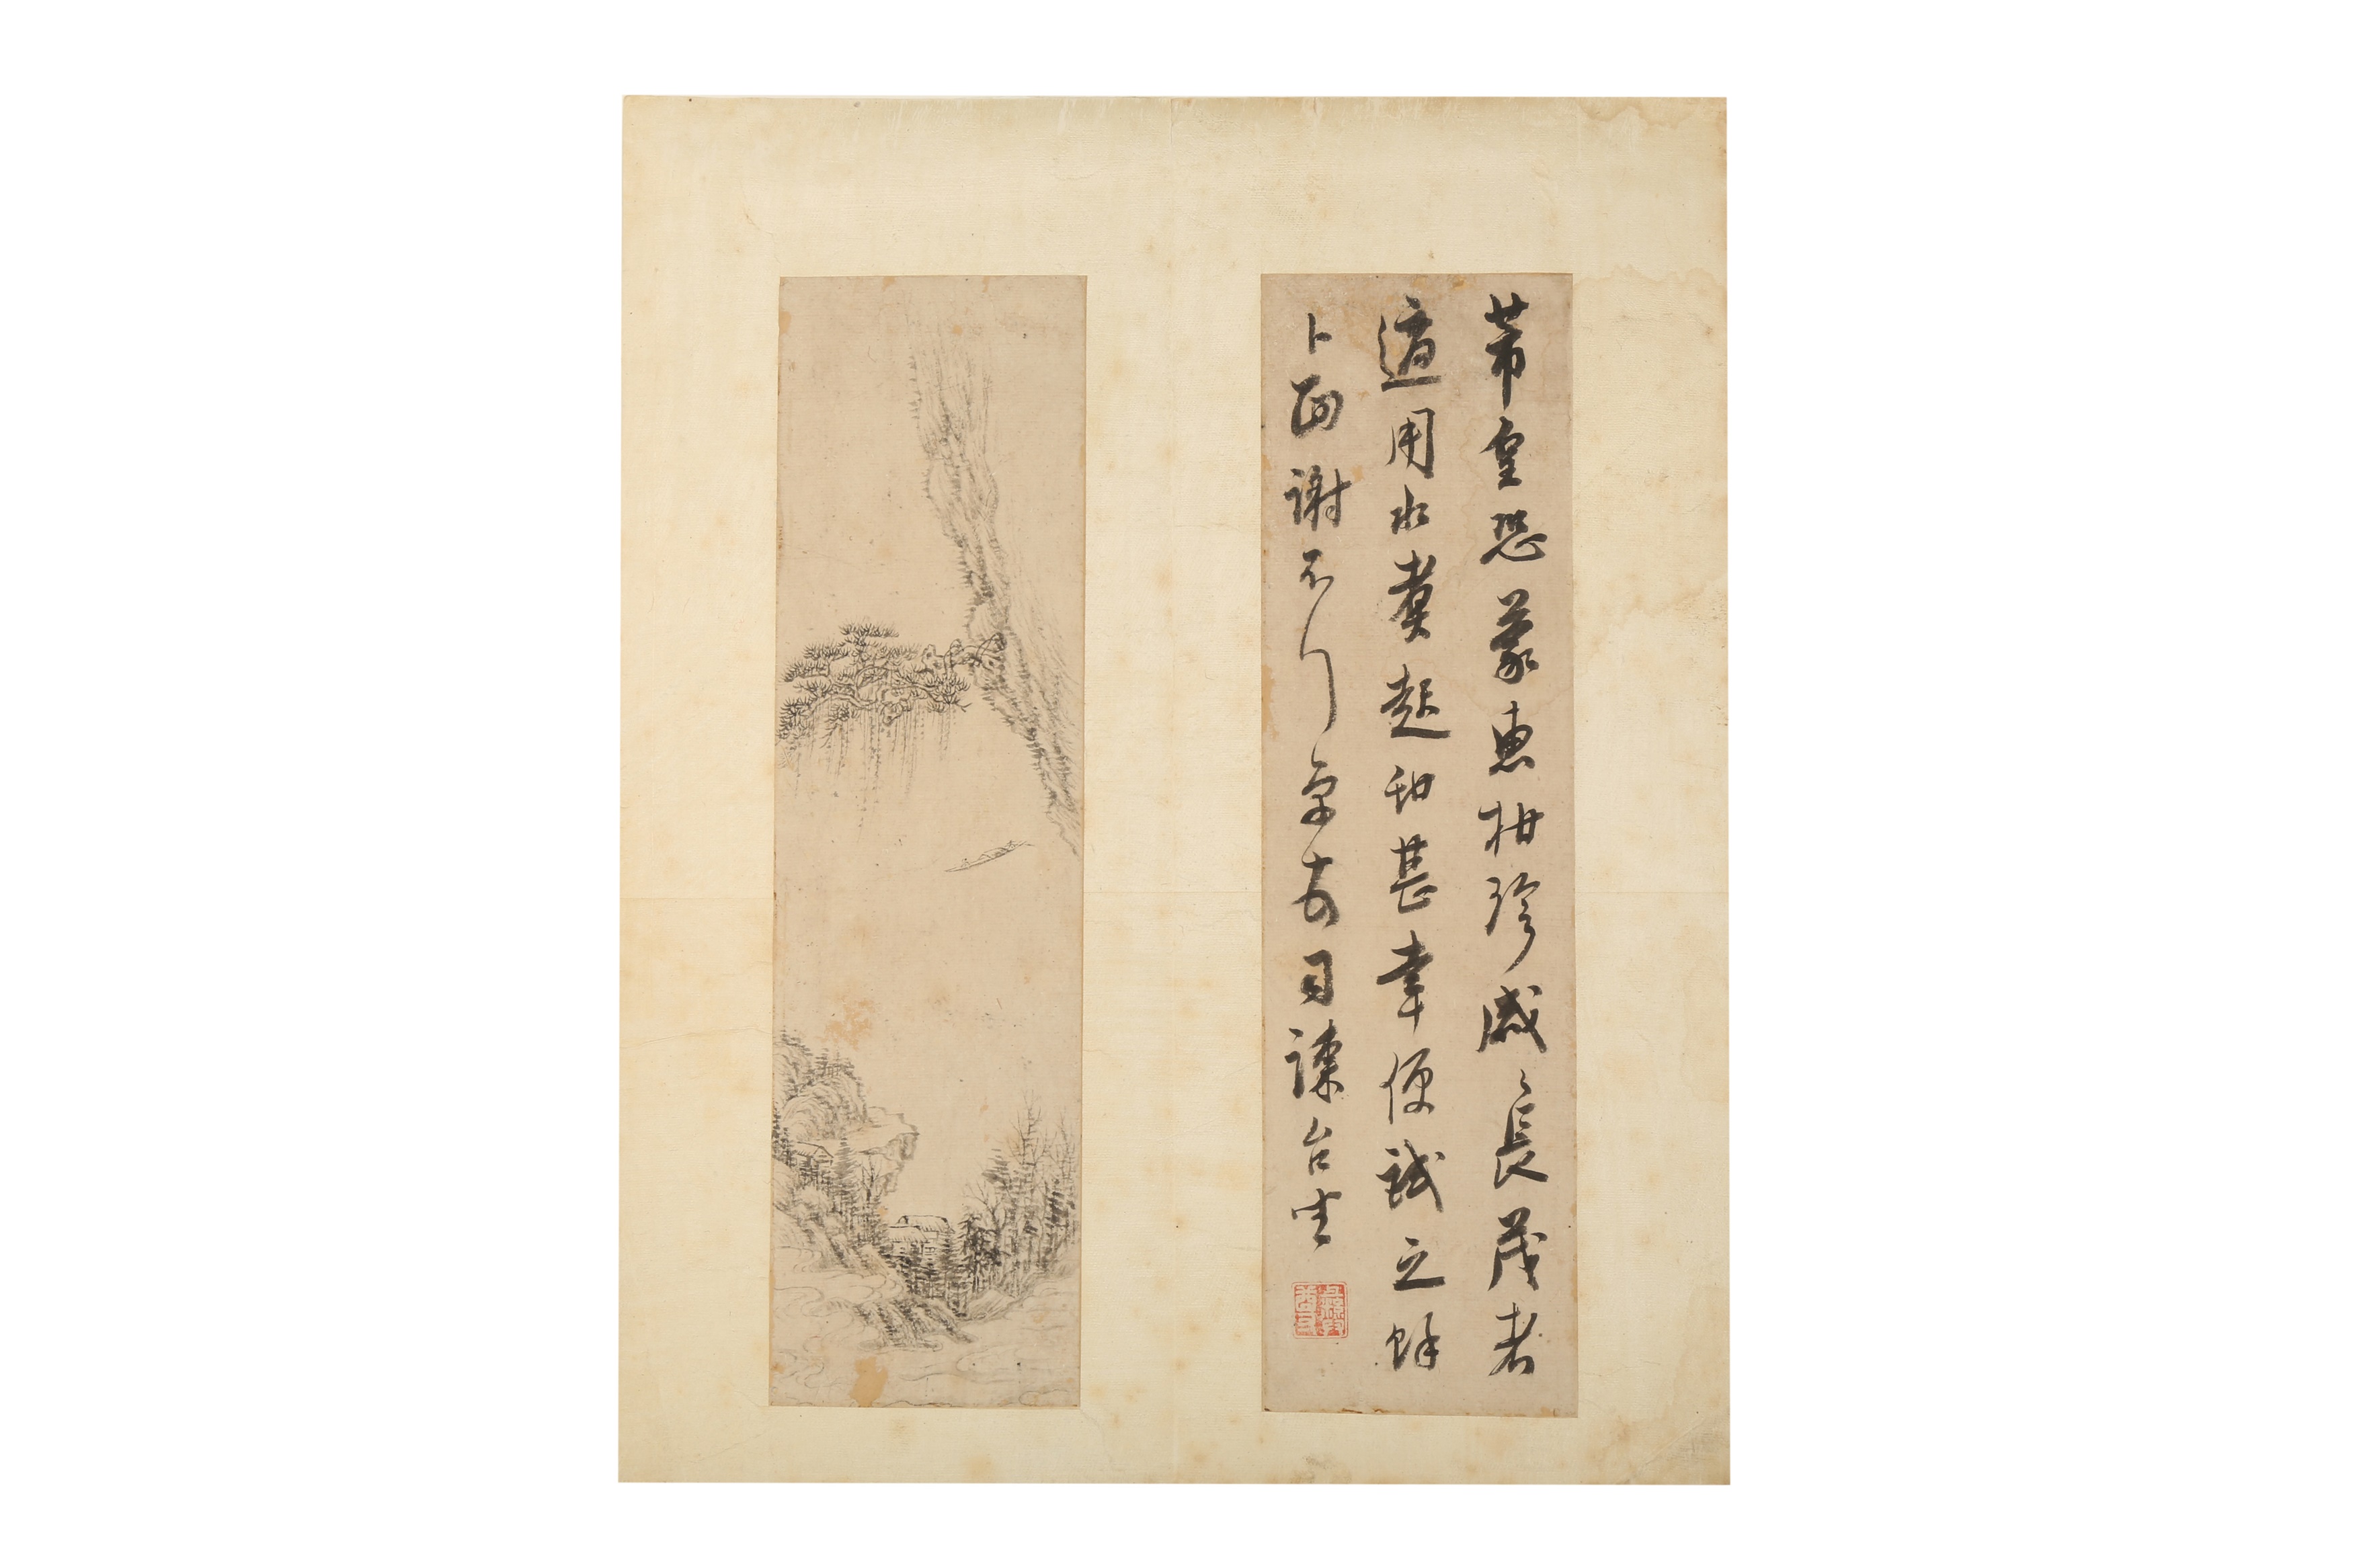 ZHU YIZUN (1629 – 1709); CUI ZHAOZHI; CHENG ZANQING; QI ZHAOLIN and others.